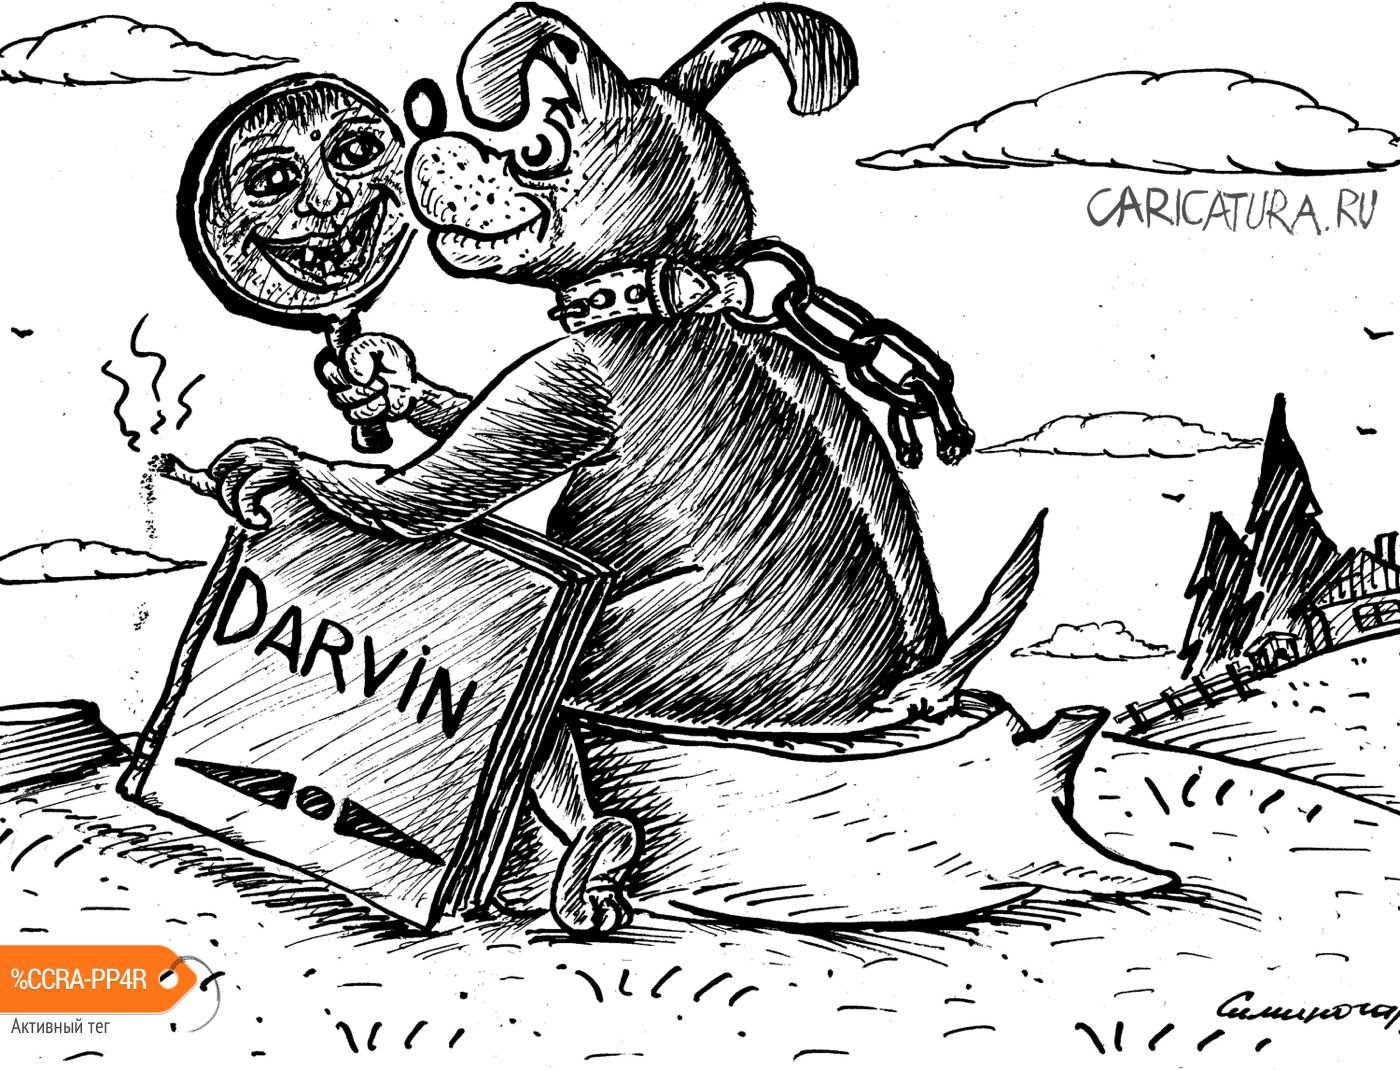 Карикатура "Дарвин", Vadim Siminoga